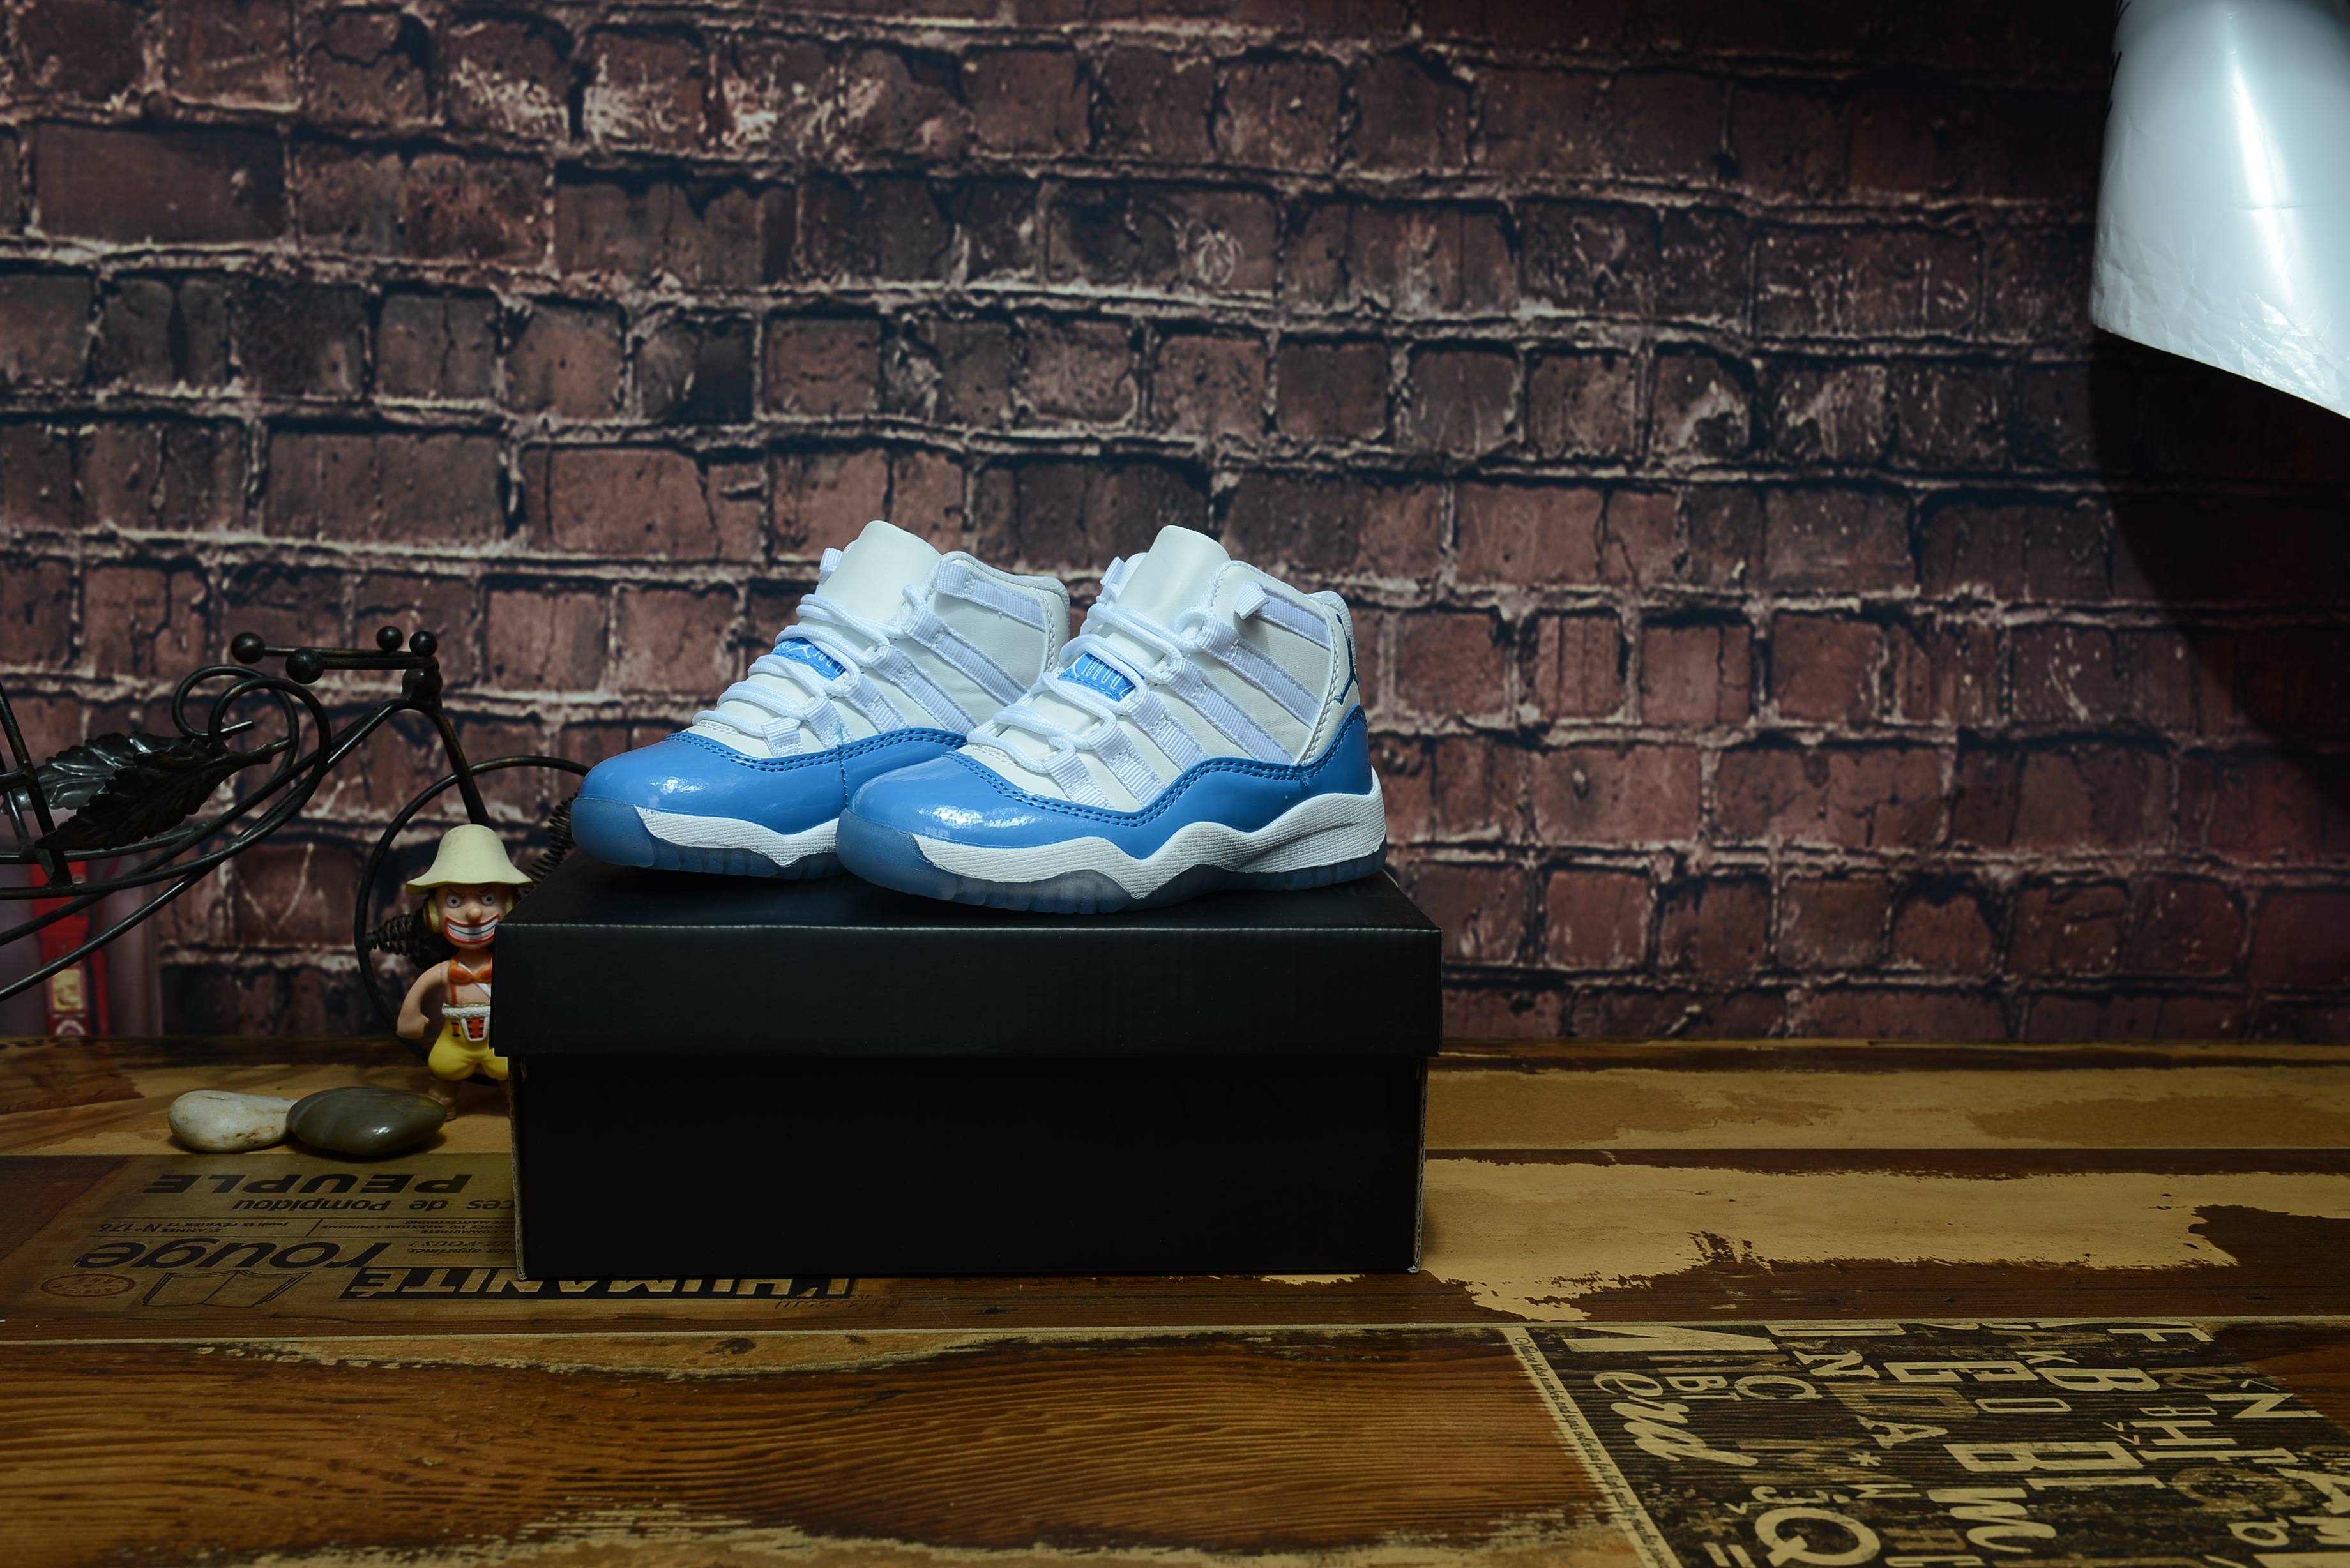 2017 Jordan 11 Retro Kids White Light Blue Shoes